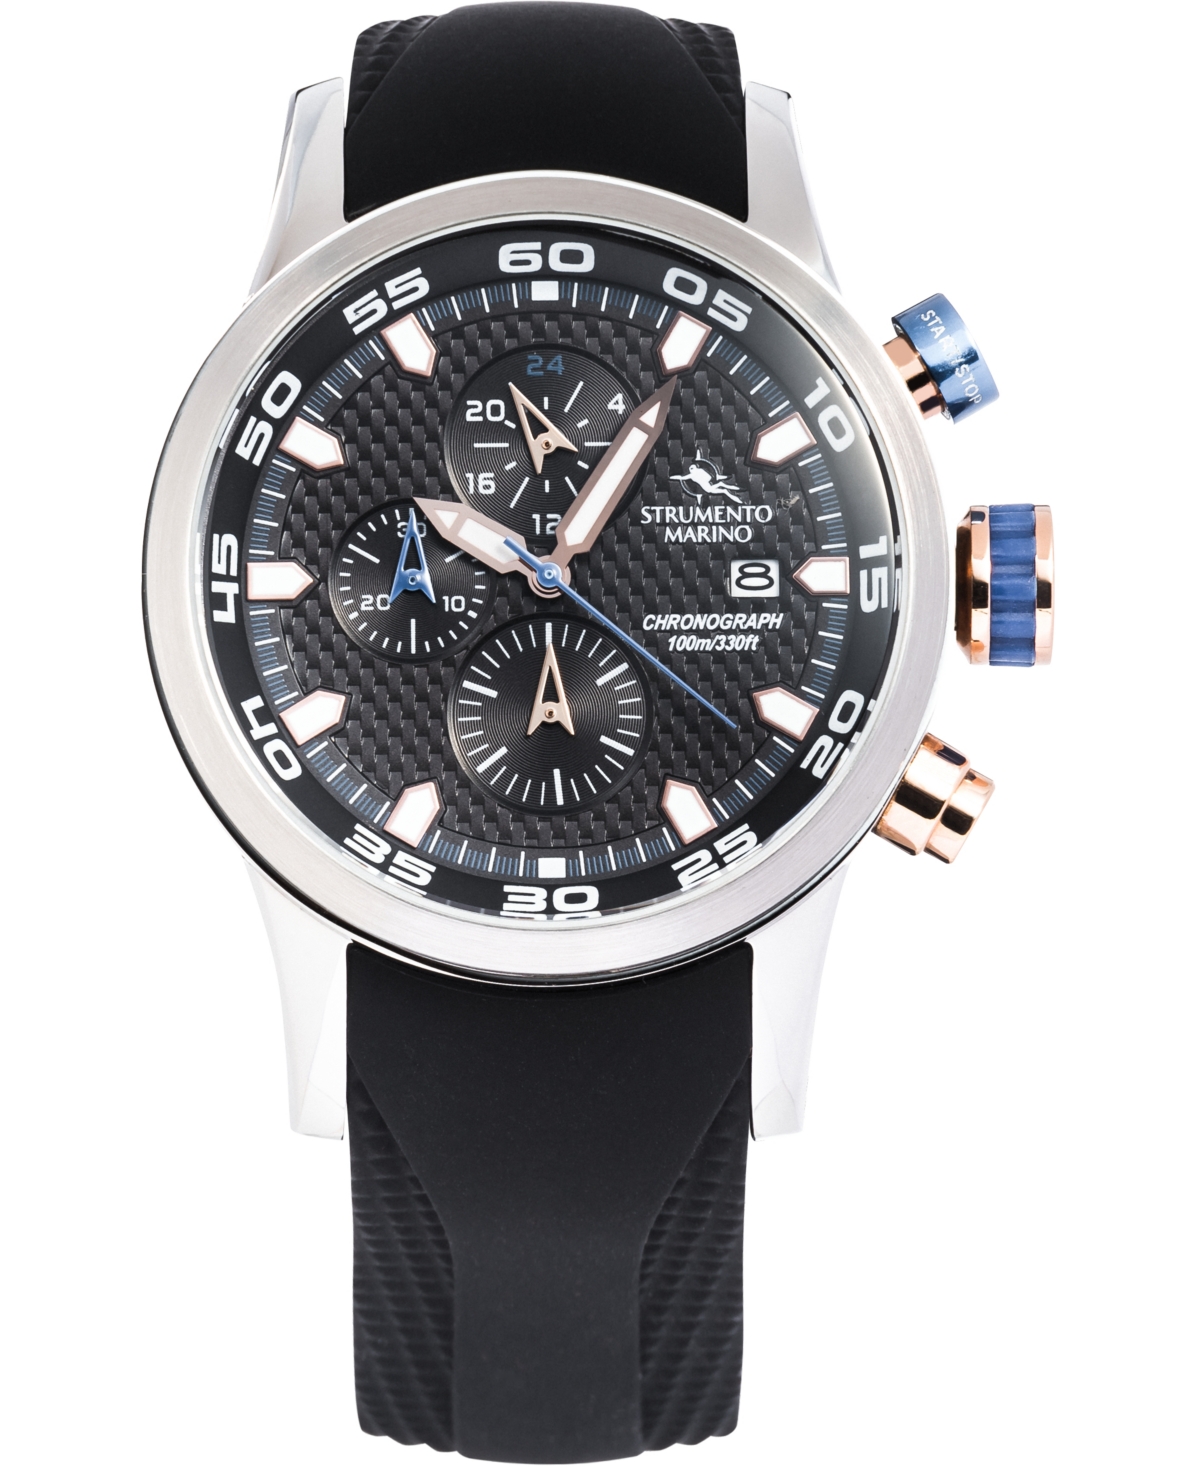 Strumento Marino Men's Speedboat Black Silicone Performance Timepiece Watch 46mm